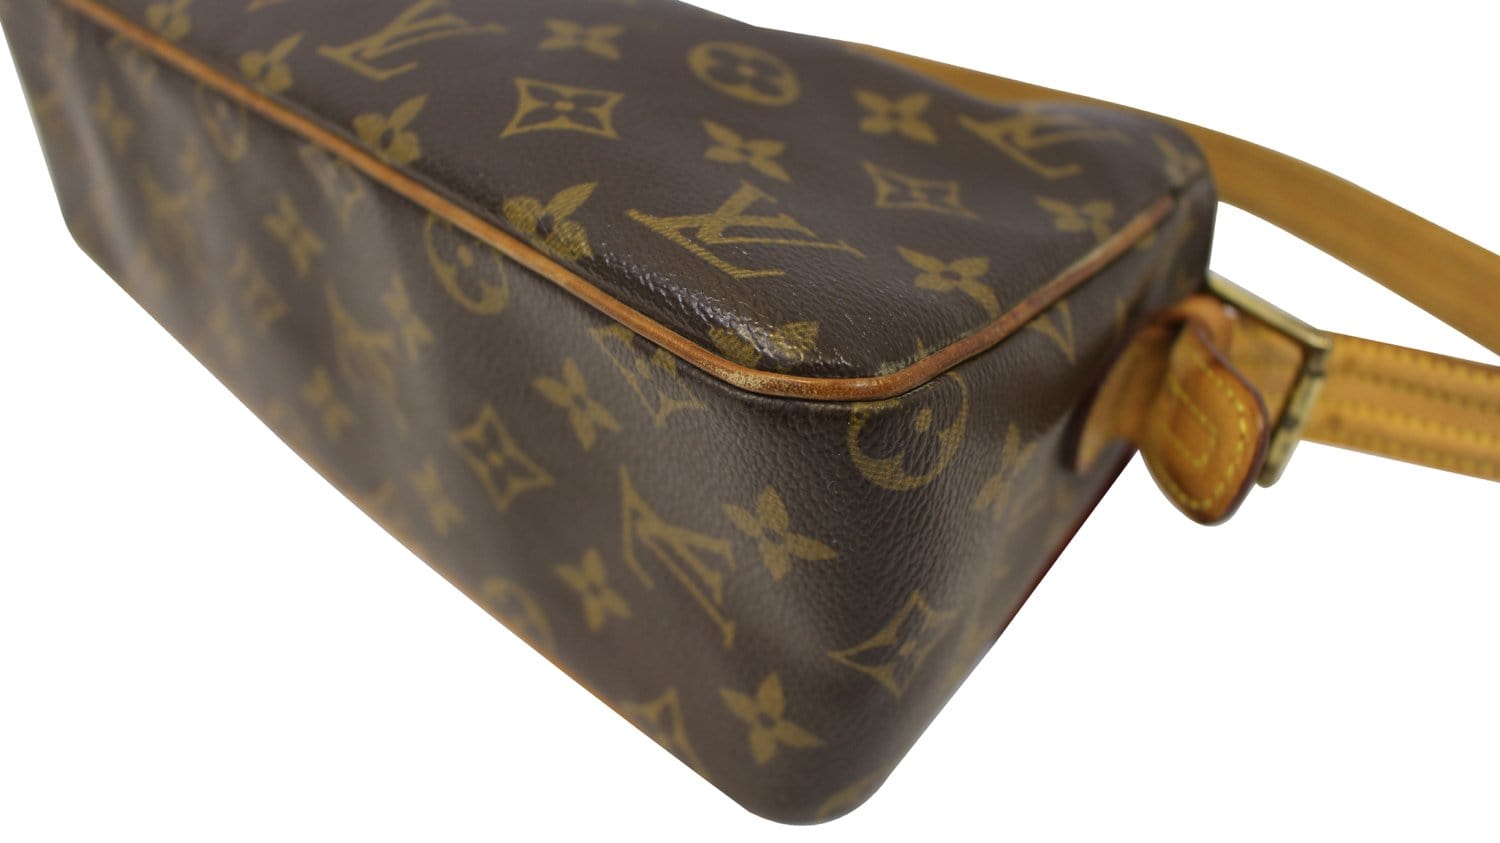 Louis Vuitton Cite MM Monogram Canvas Shoulder Bag on SALE